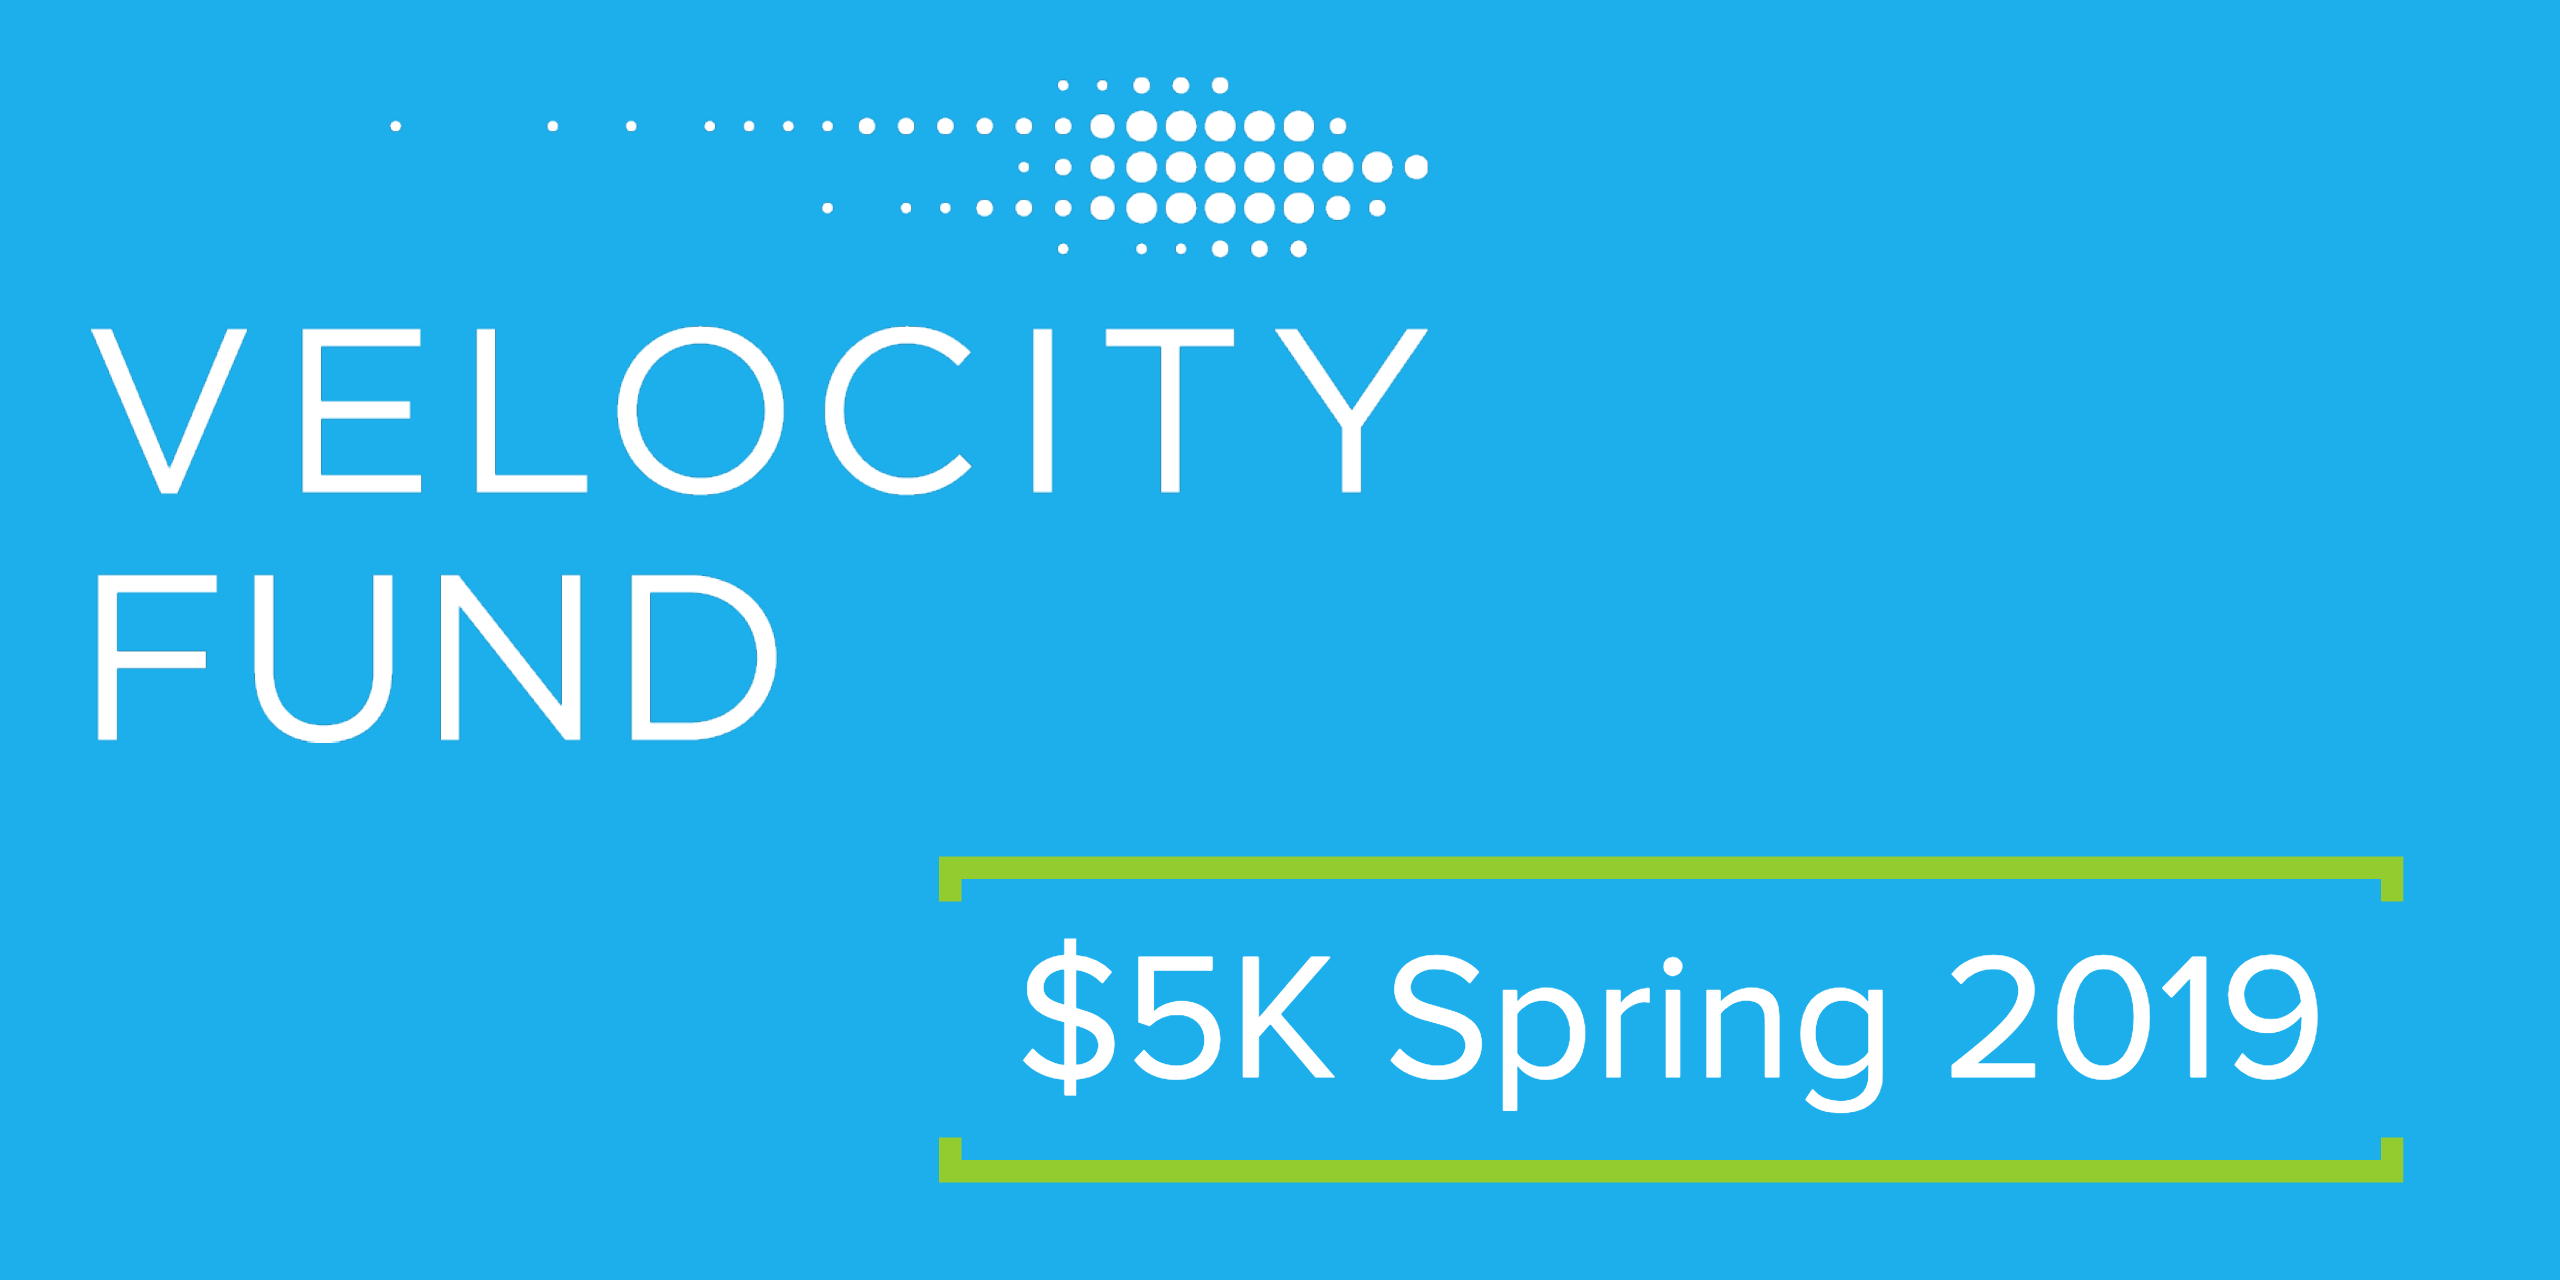 Velocity Fund $5K Spring 2019